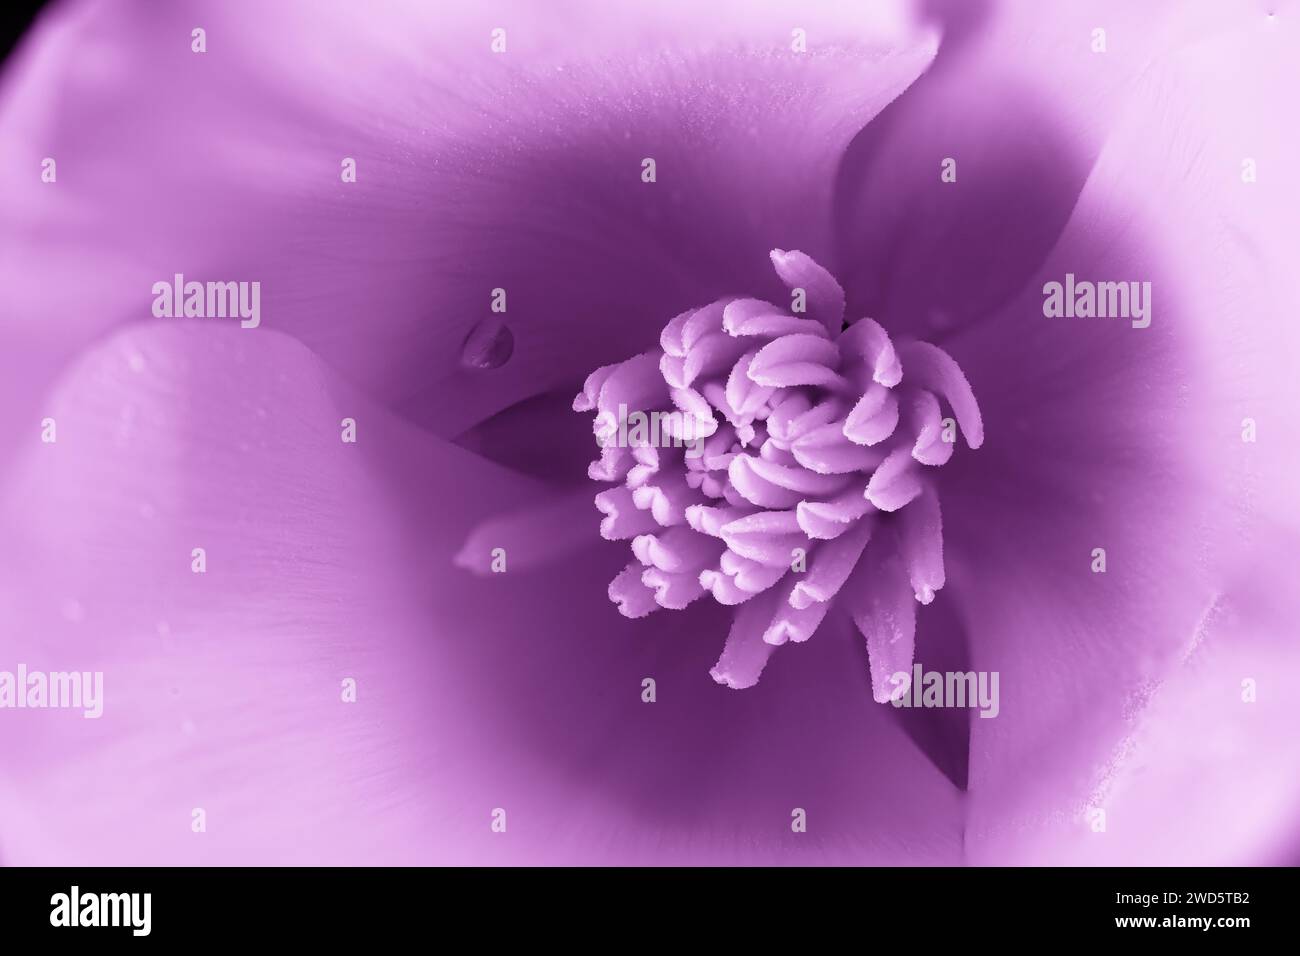 pavot de californie, fleur de couleur intense avec des changements de teinte à la couleur pourpre avec goutte d'eau Banque D'Images